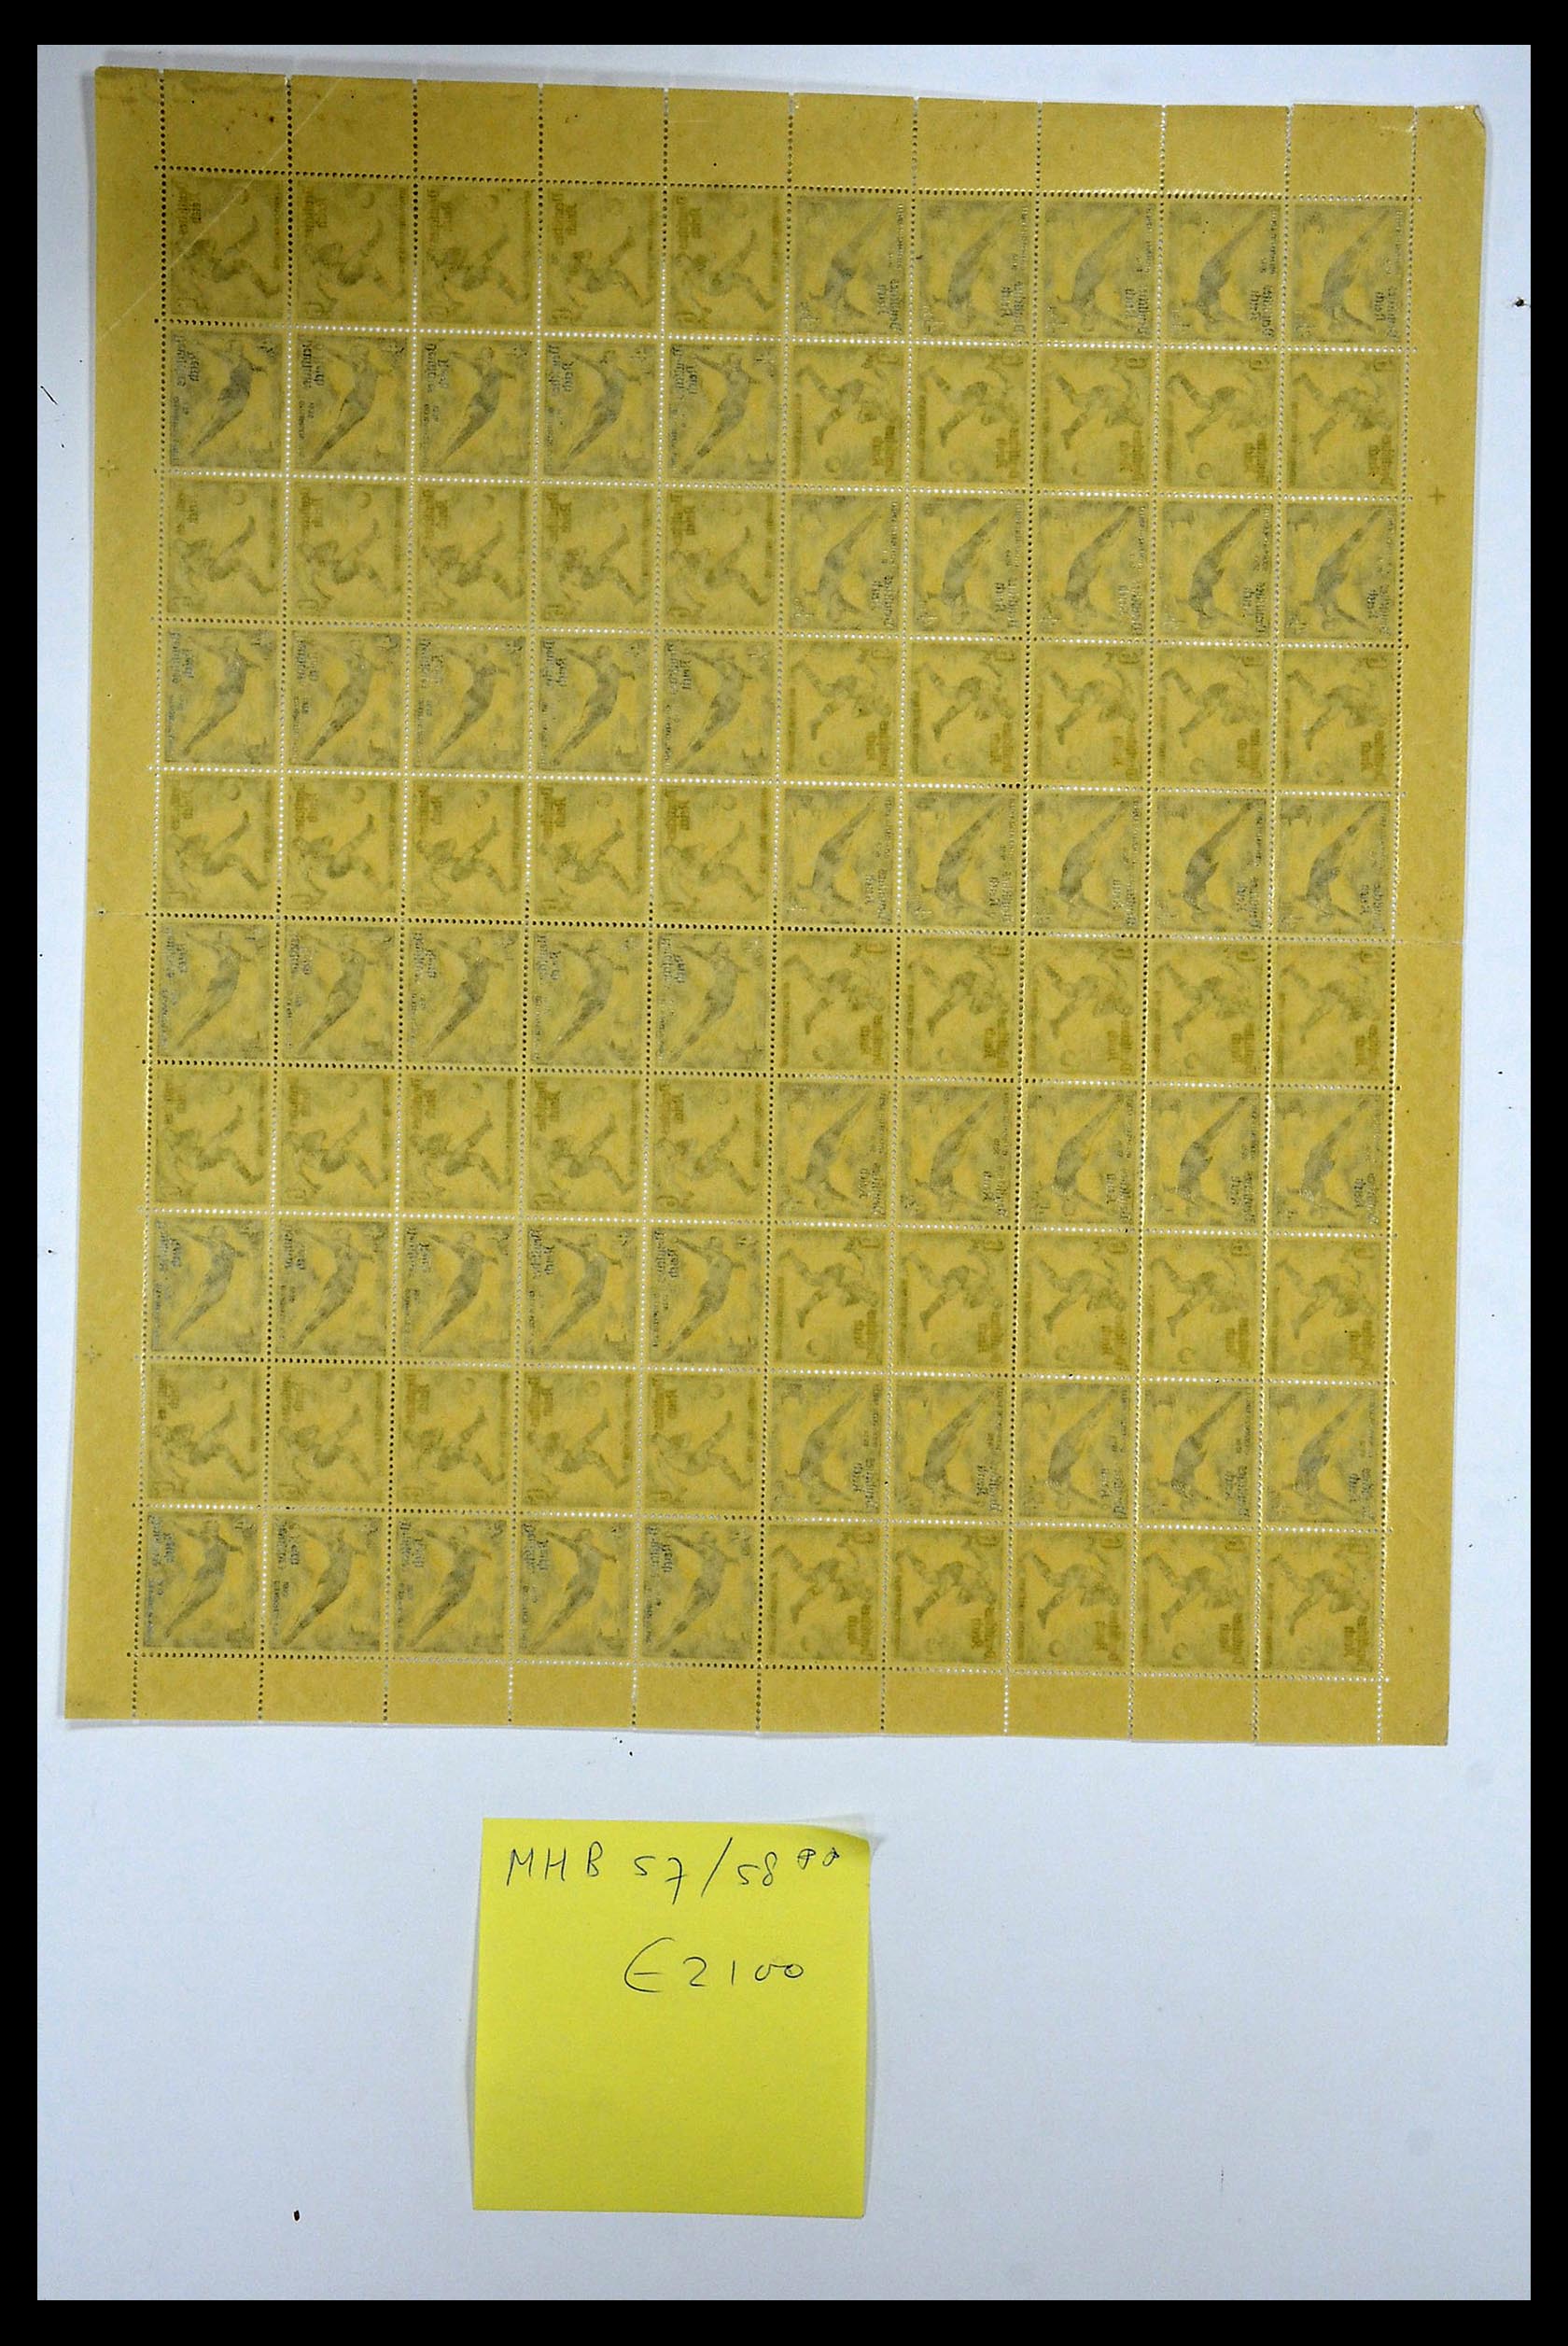 35075 040 - Stamp Collection 35075 German Reich Markenheftchenbogen 1933-1941.